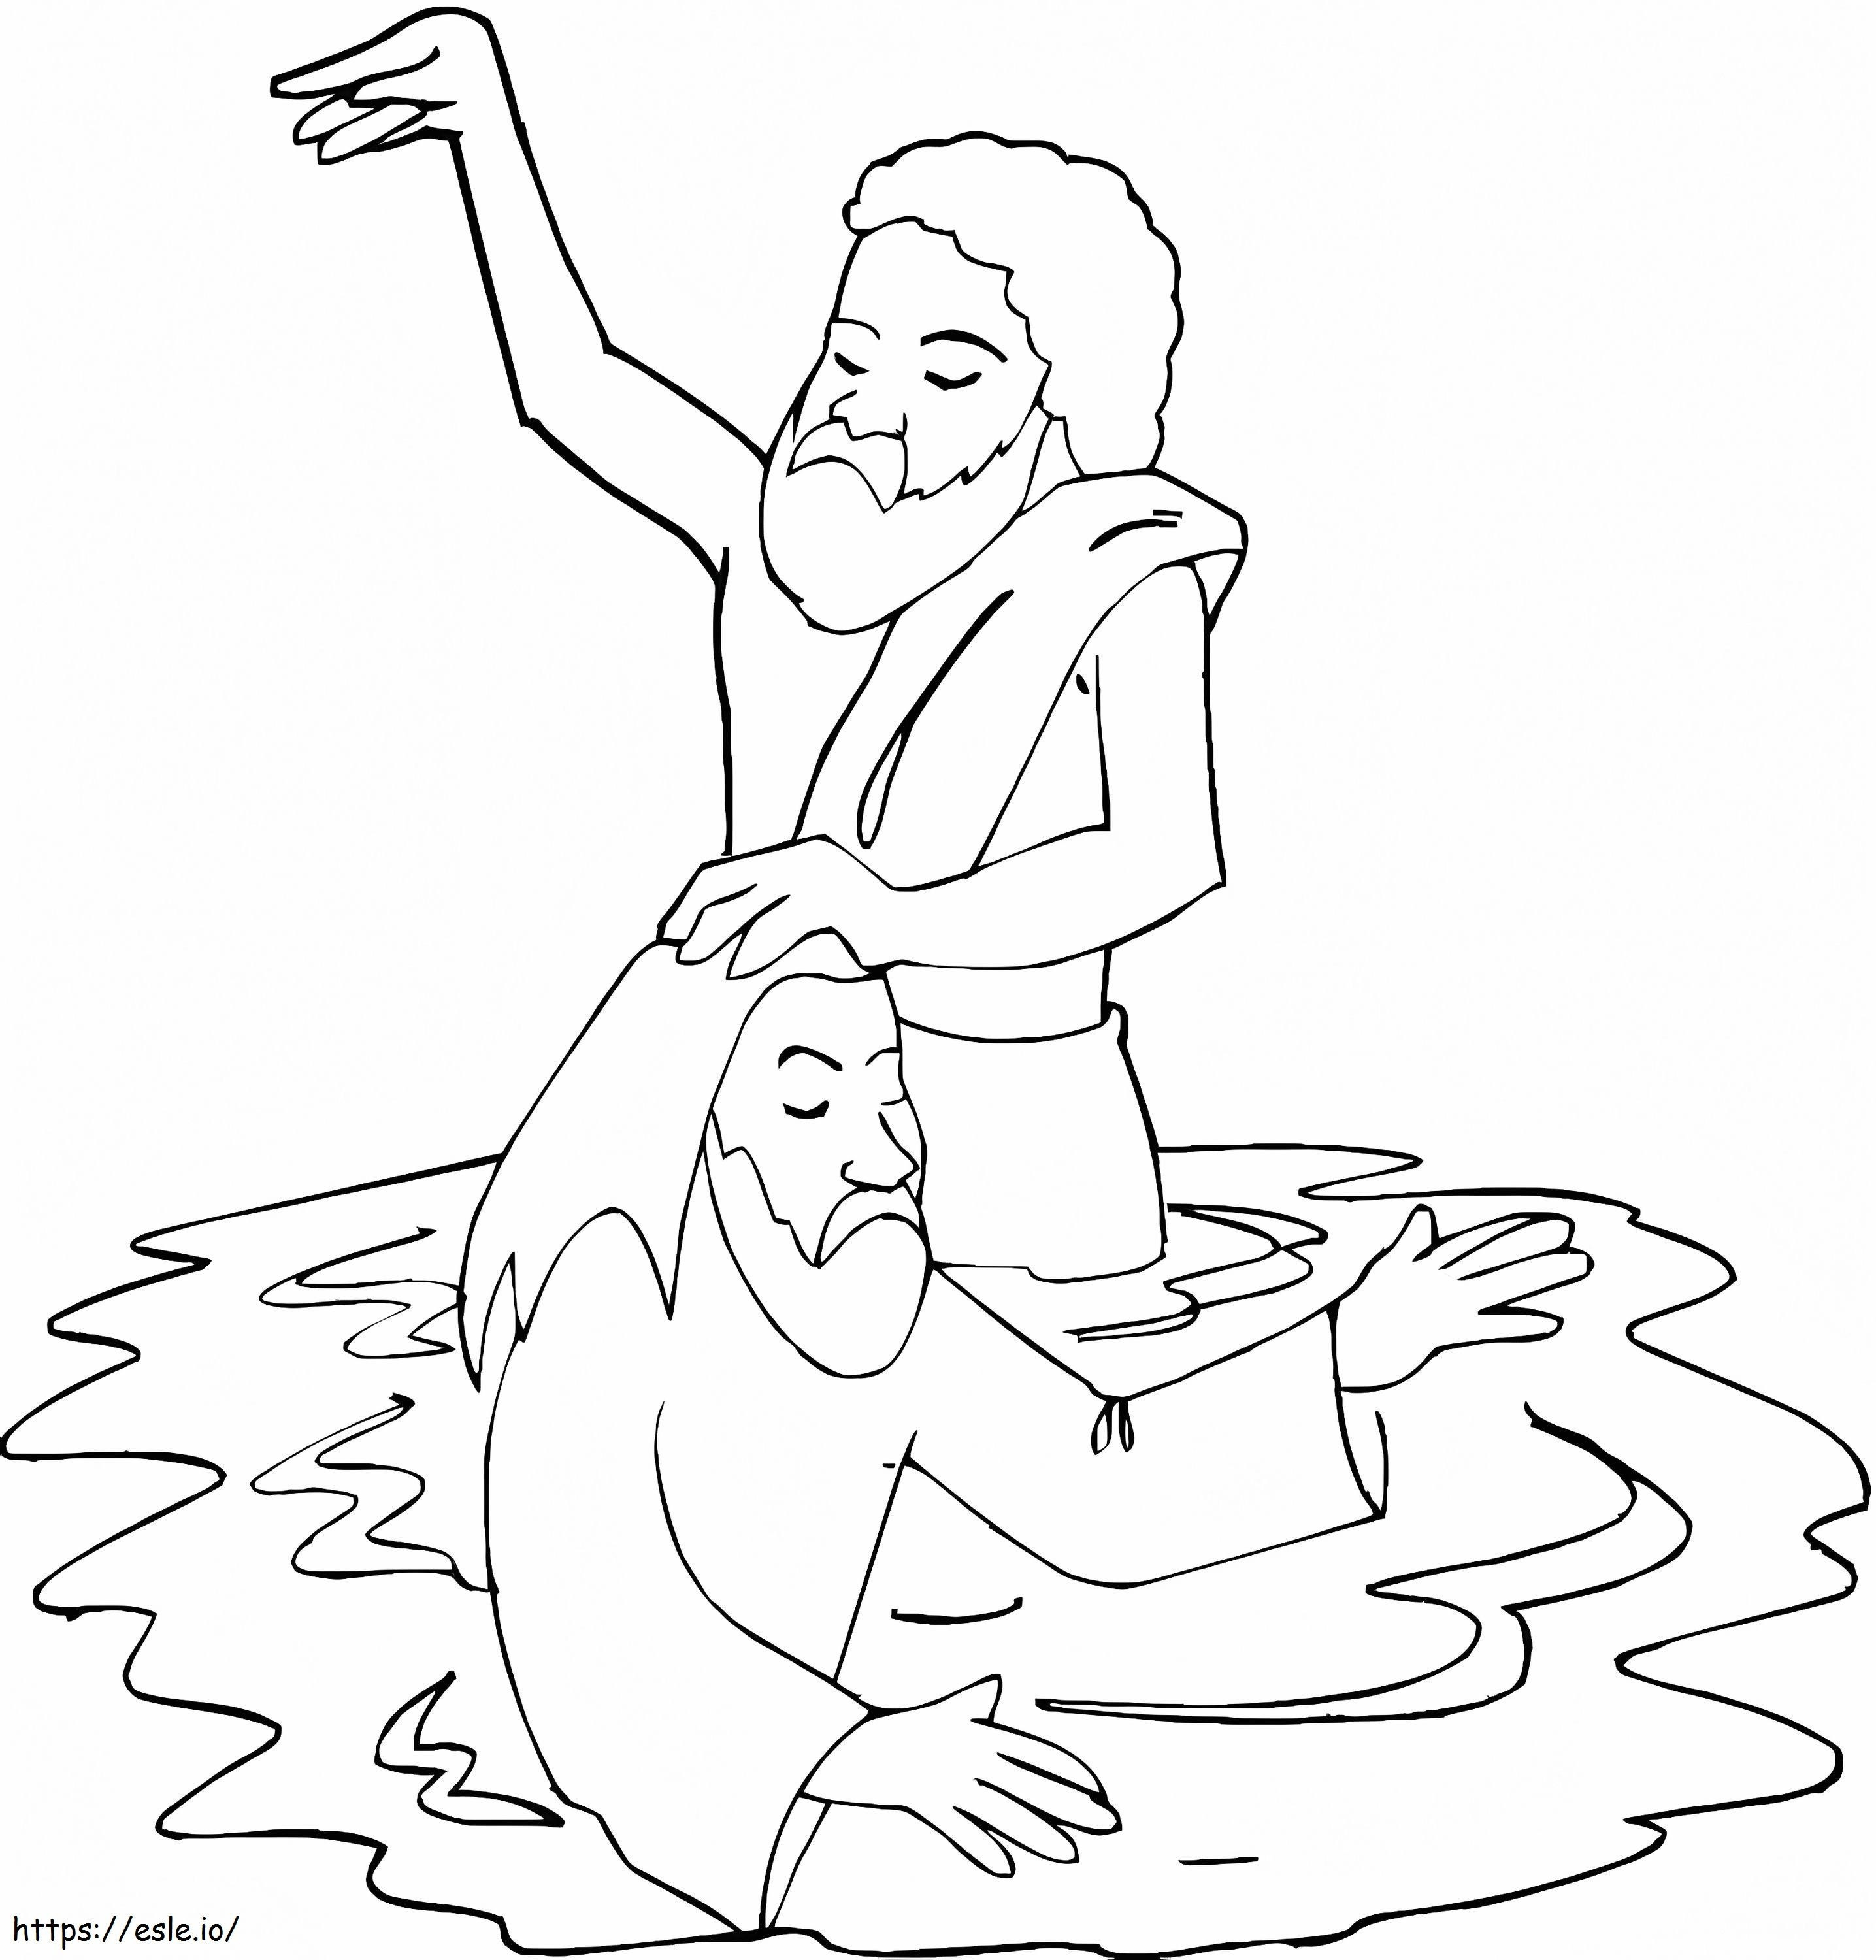 Taufe Jesu im Jordan ausmalbilder